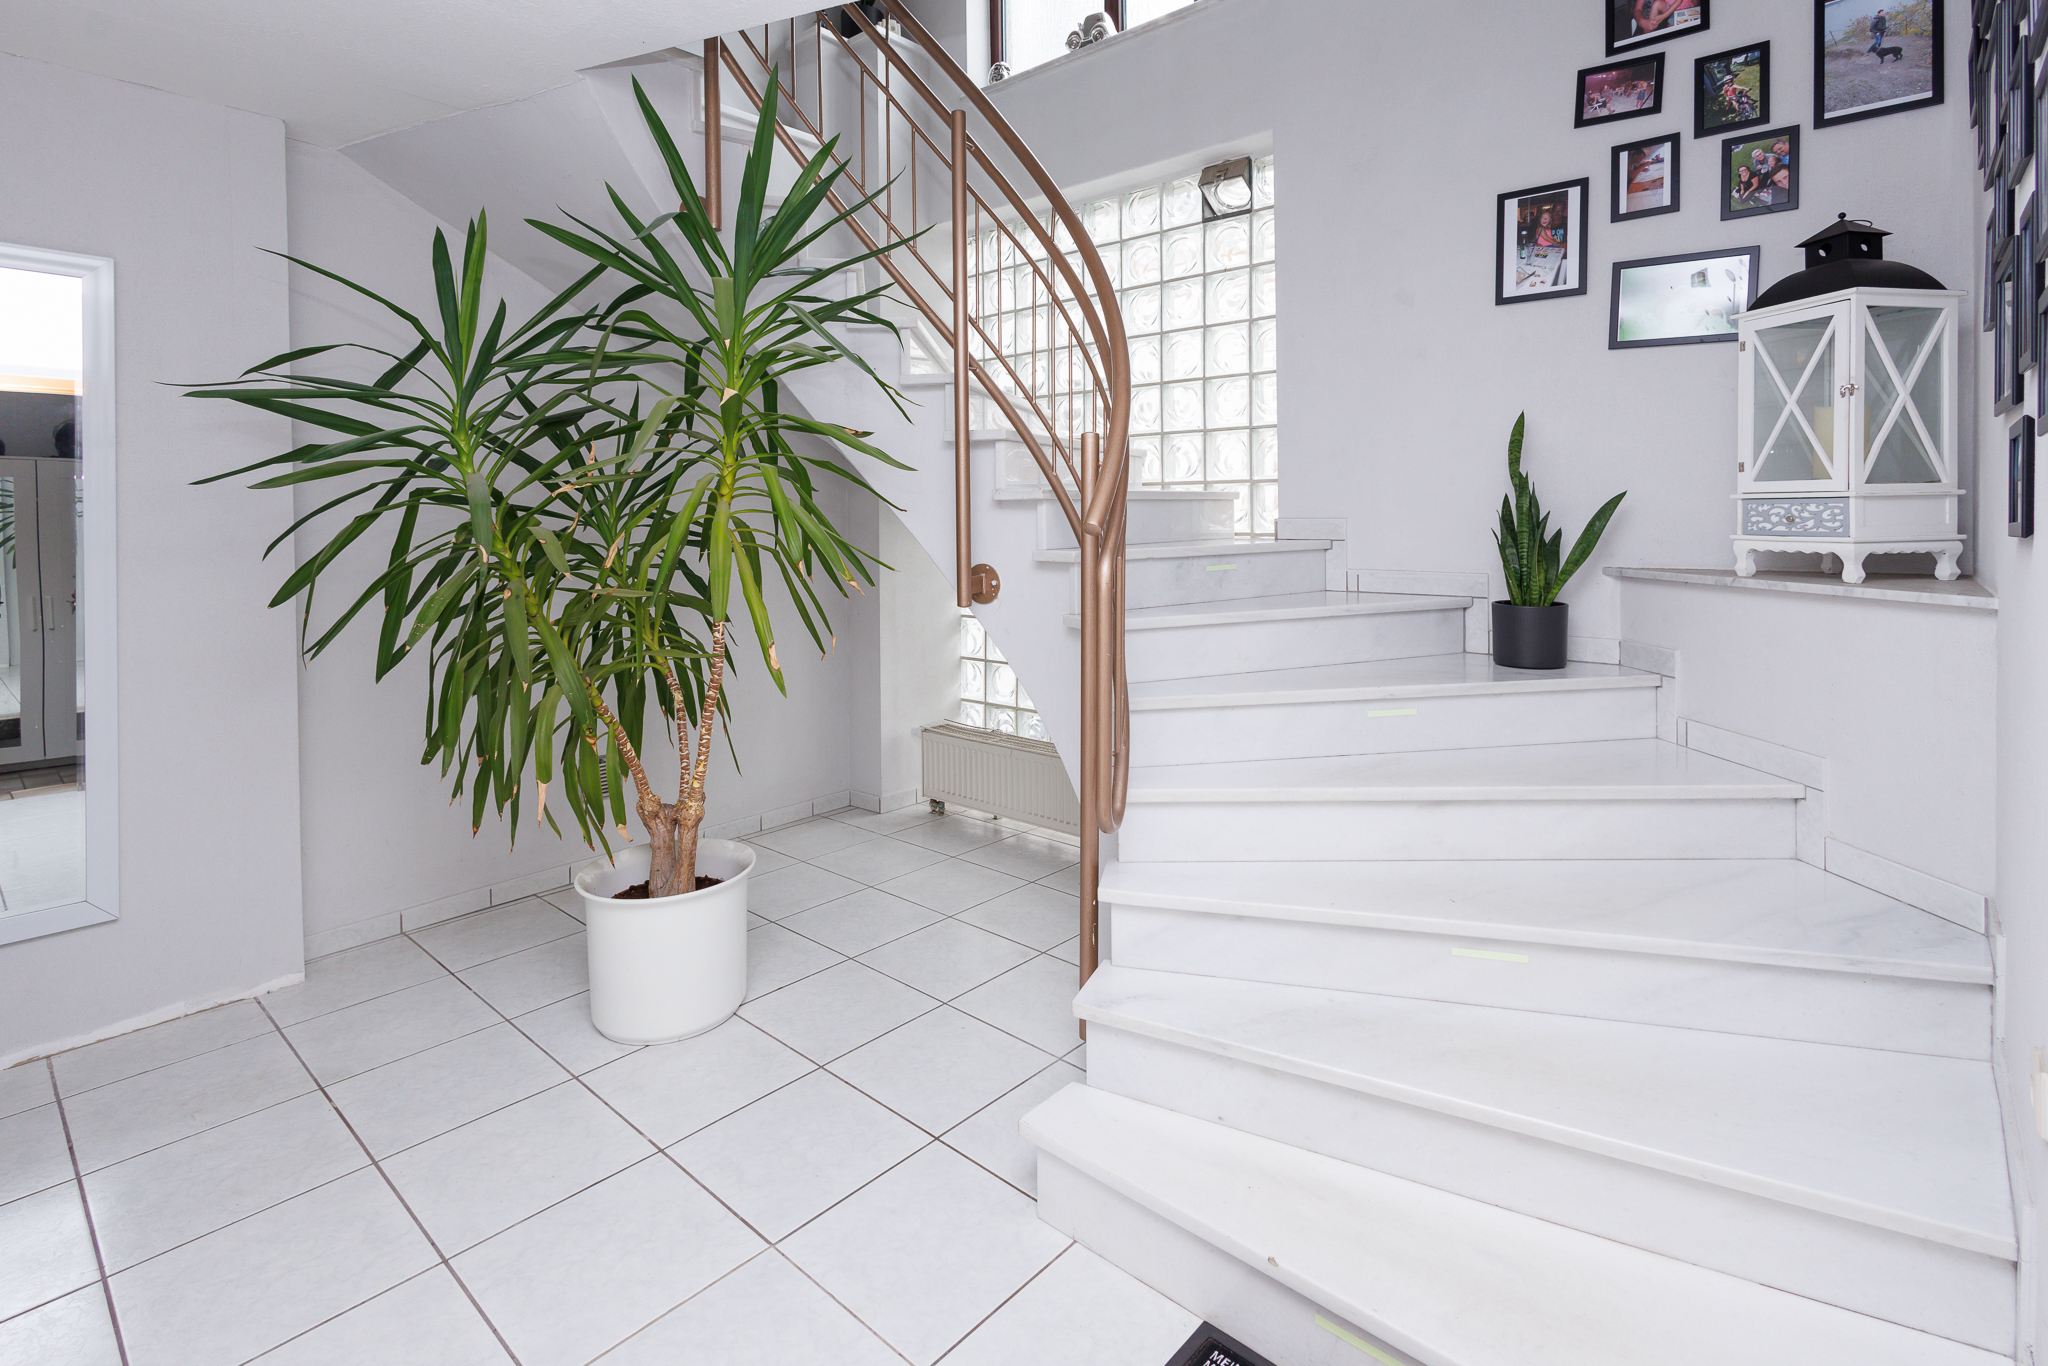 hochwertige weiße Marmortreppe, rechts mit Absatz mit weißer Laterne, mittig große Palme, weißer Fliesenboden, links erkennt man einen Spiegel